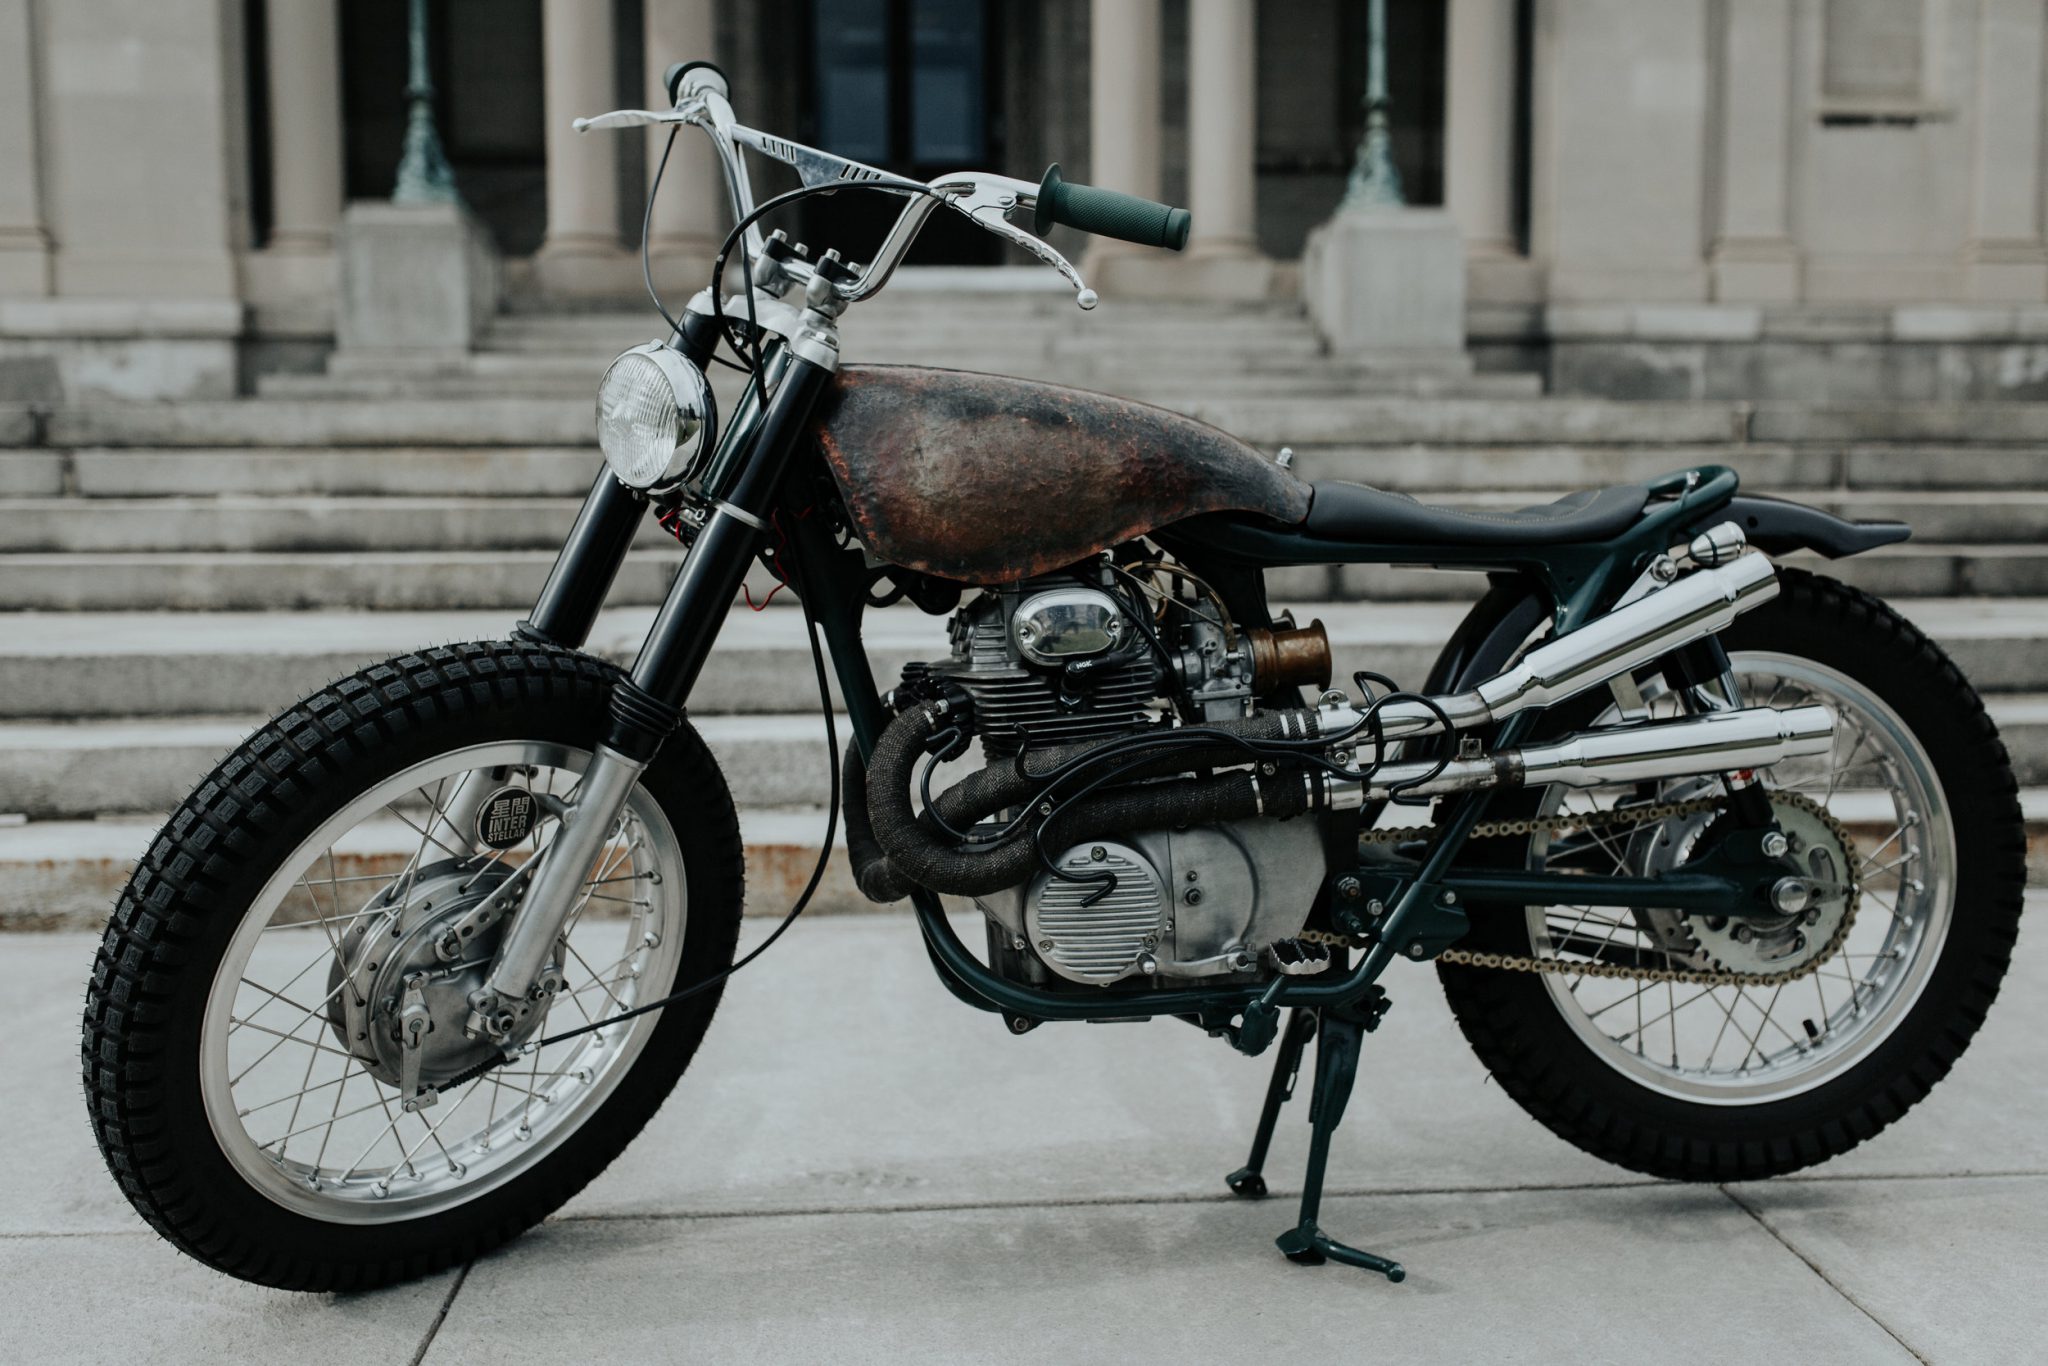 custom motorcycle